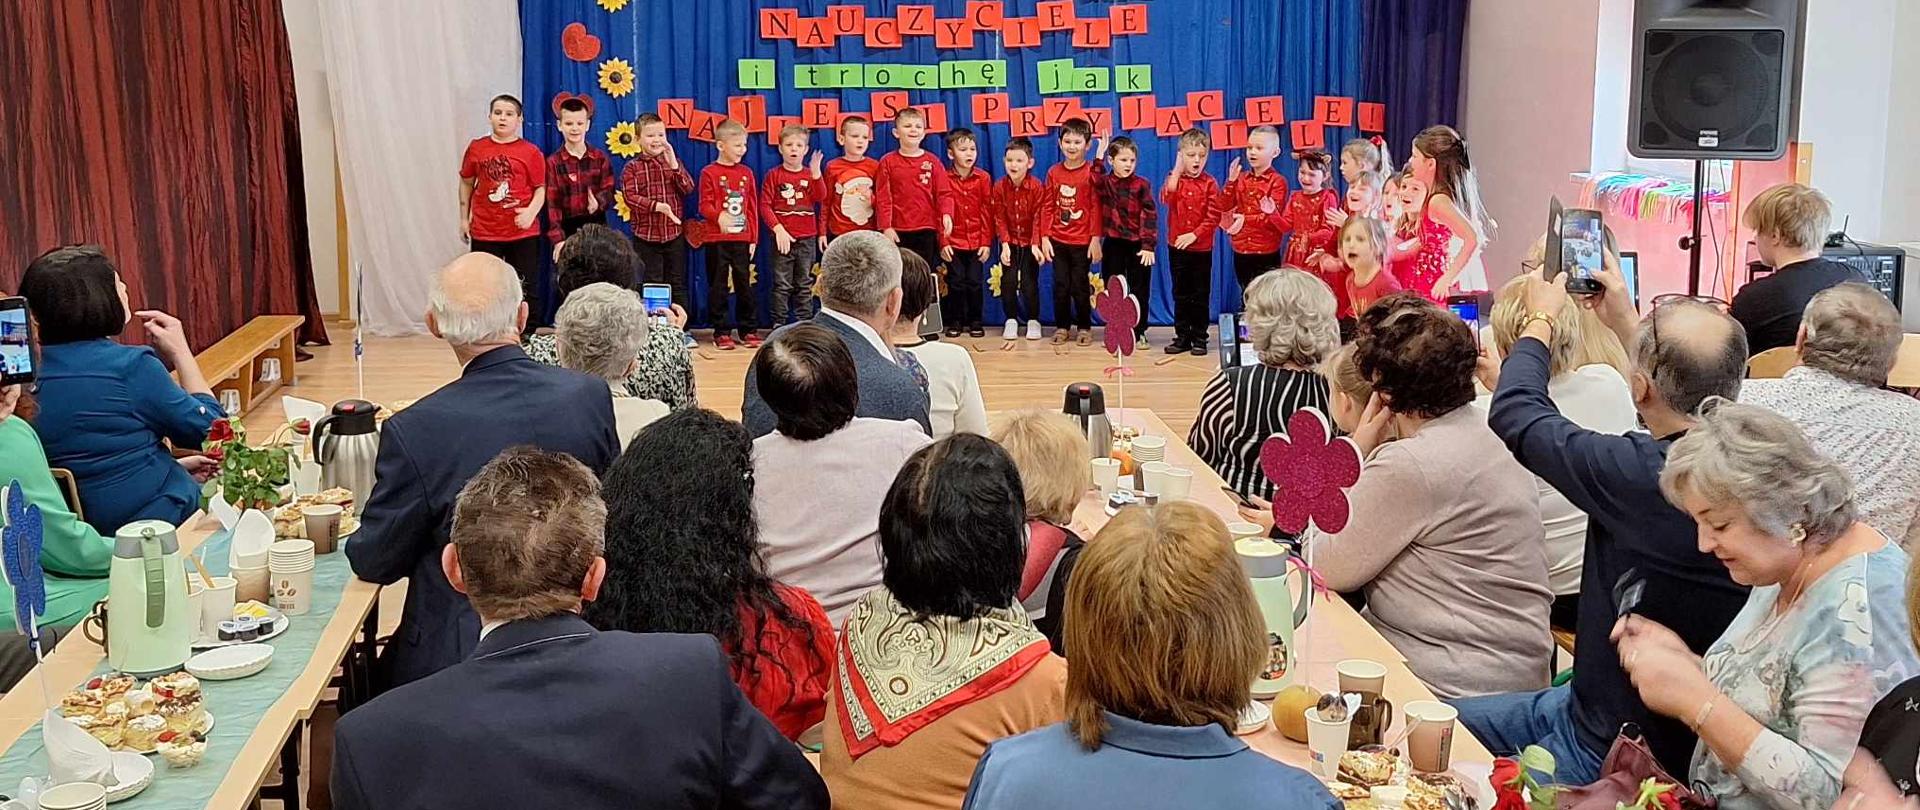 Dzieci ubrane w czerwone stroje śpiewają piosenkę. Wokół siedzą zebrani goście.